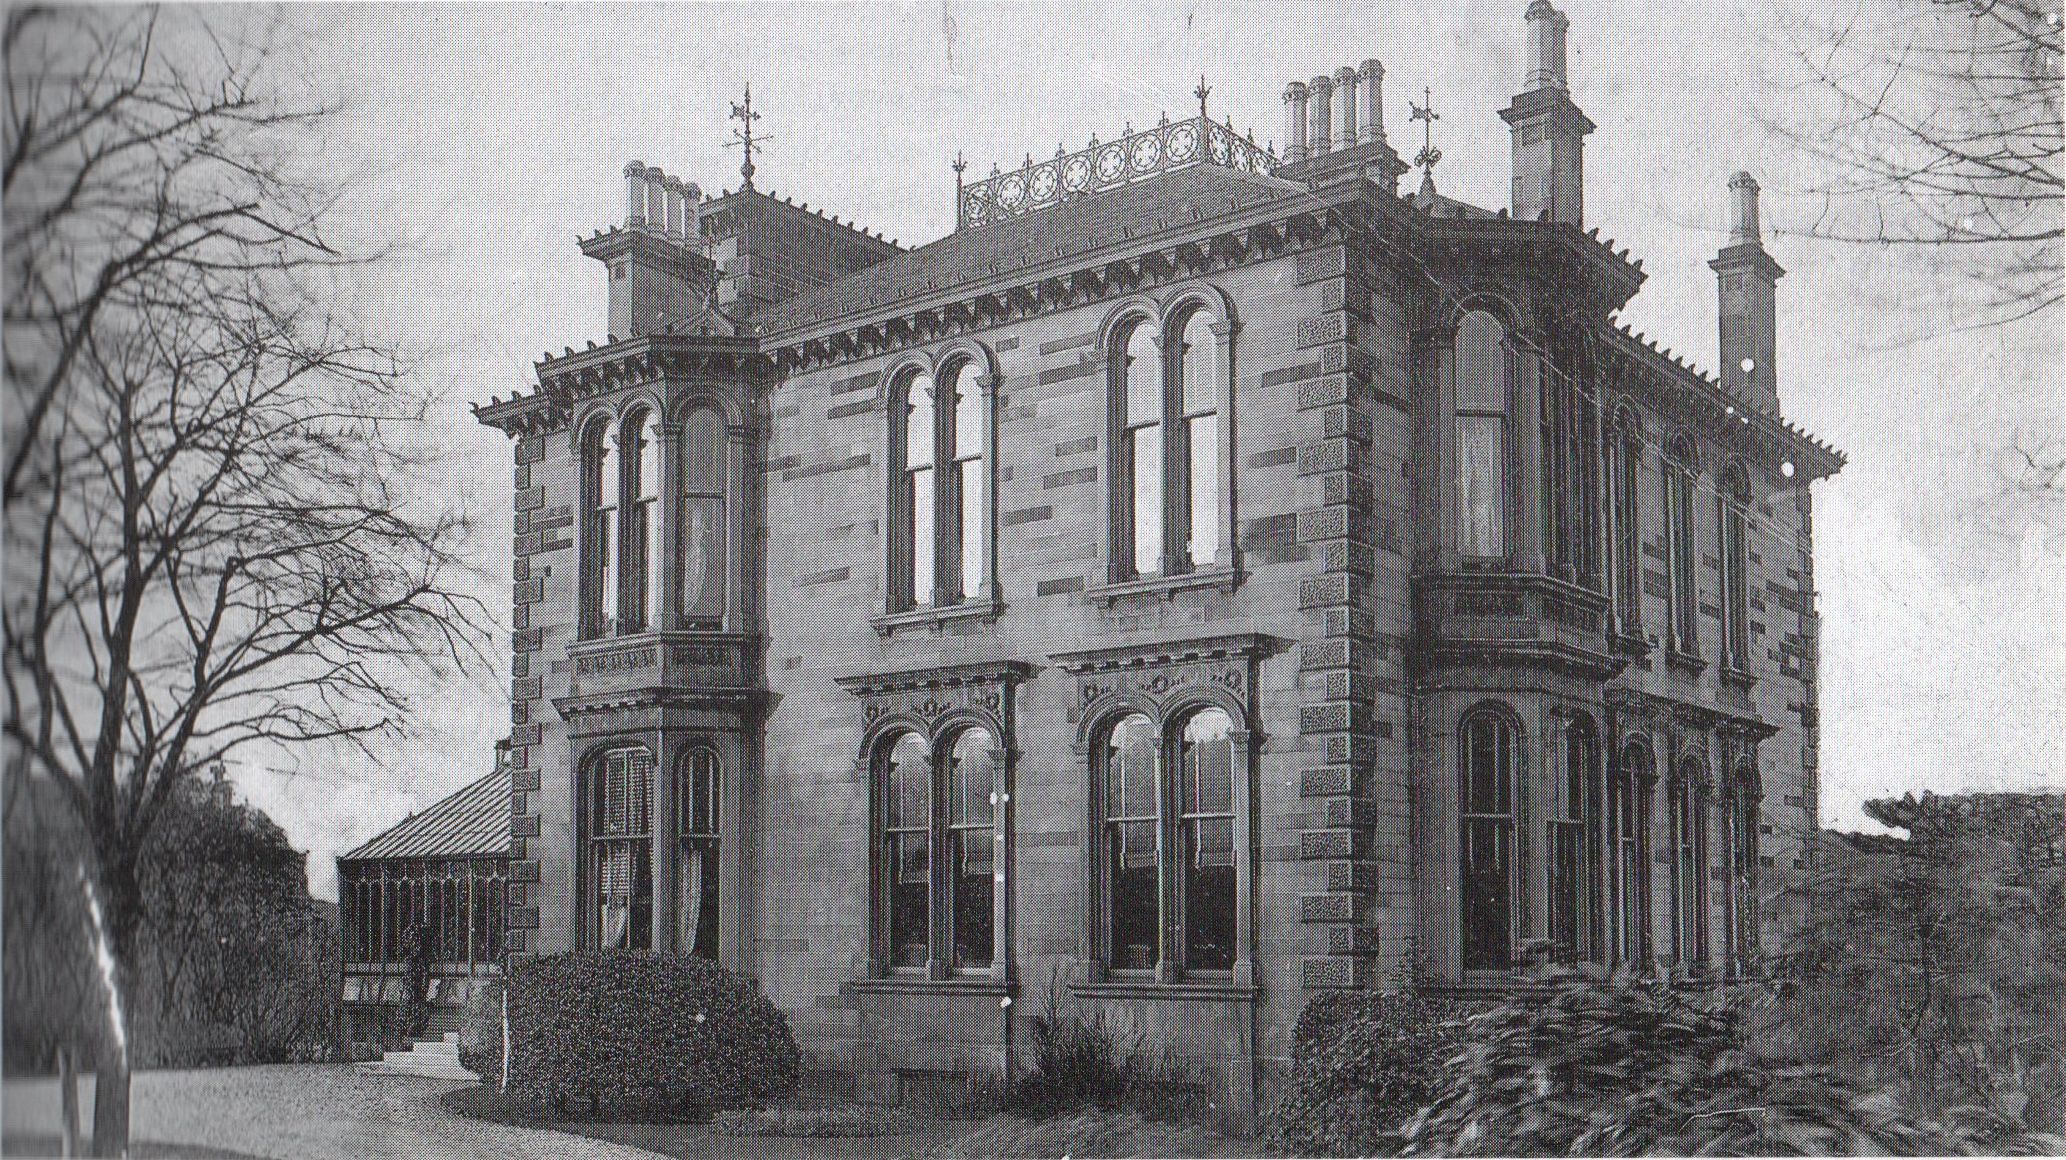 "Ravensleigh" Villa in Kelvinside district of Glasgow